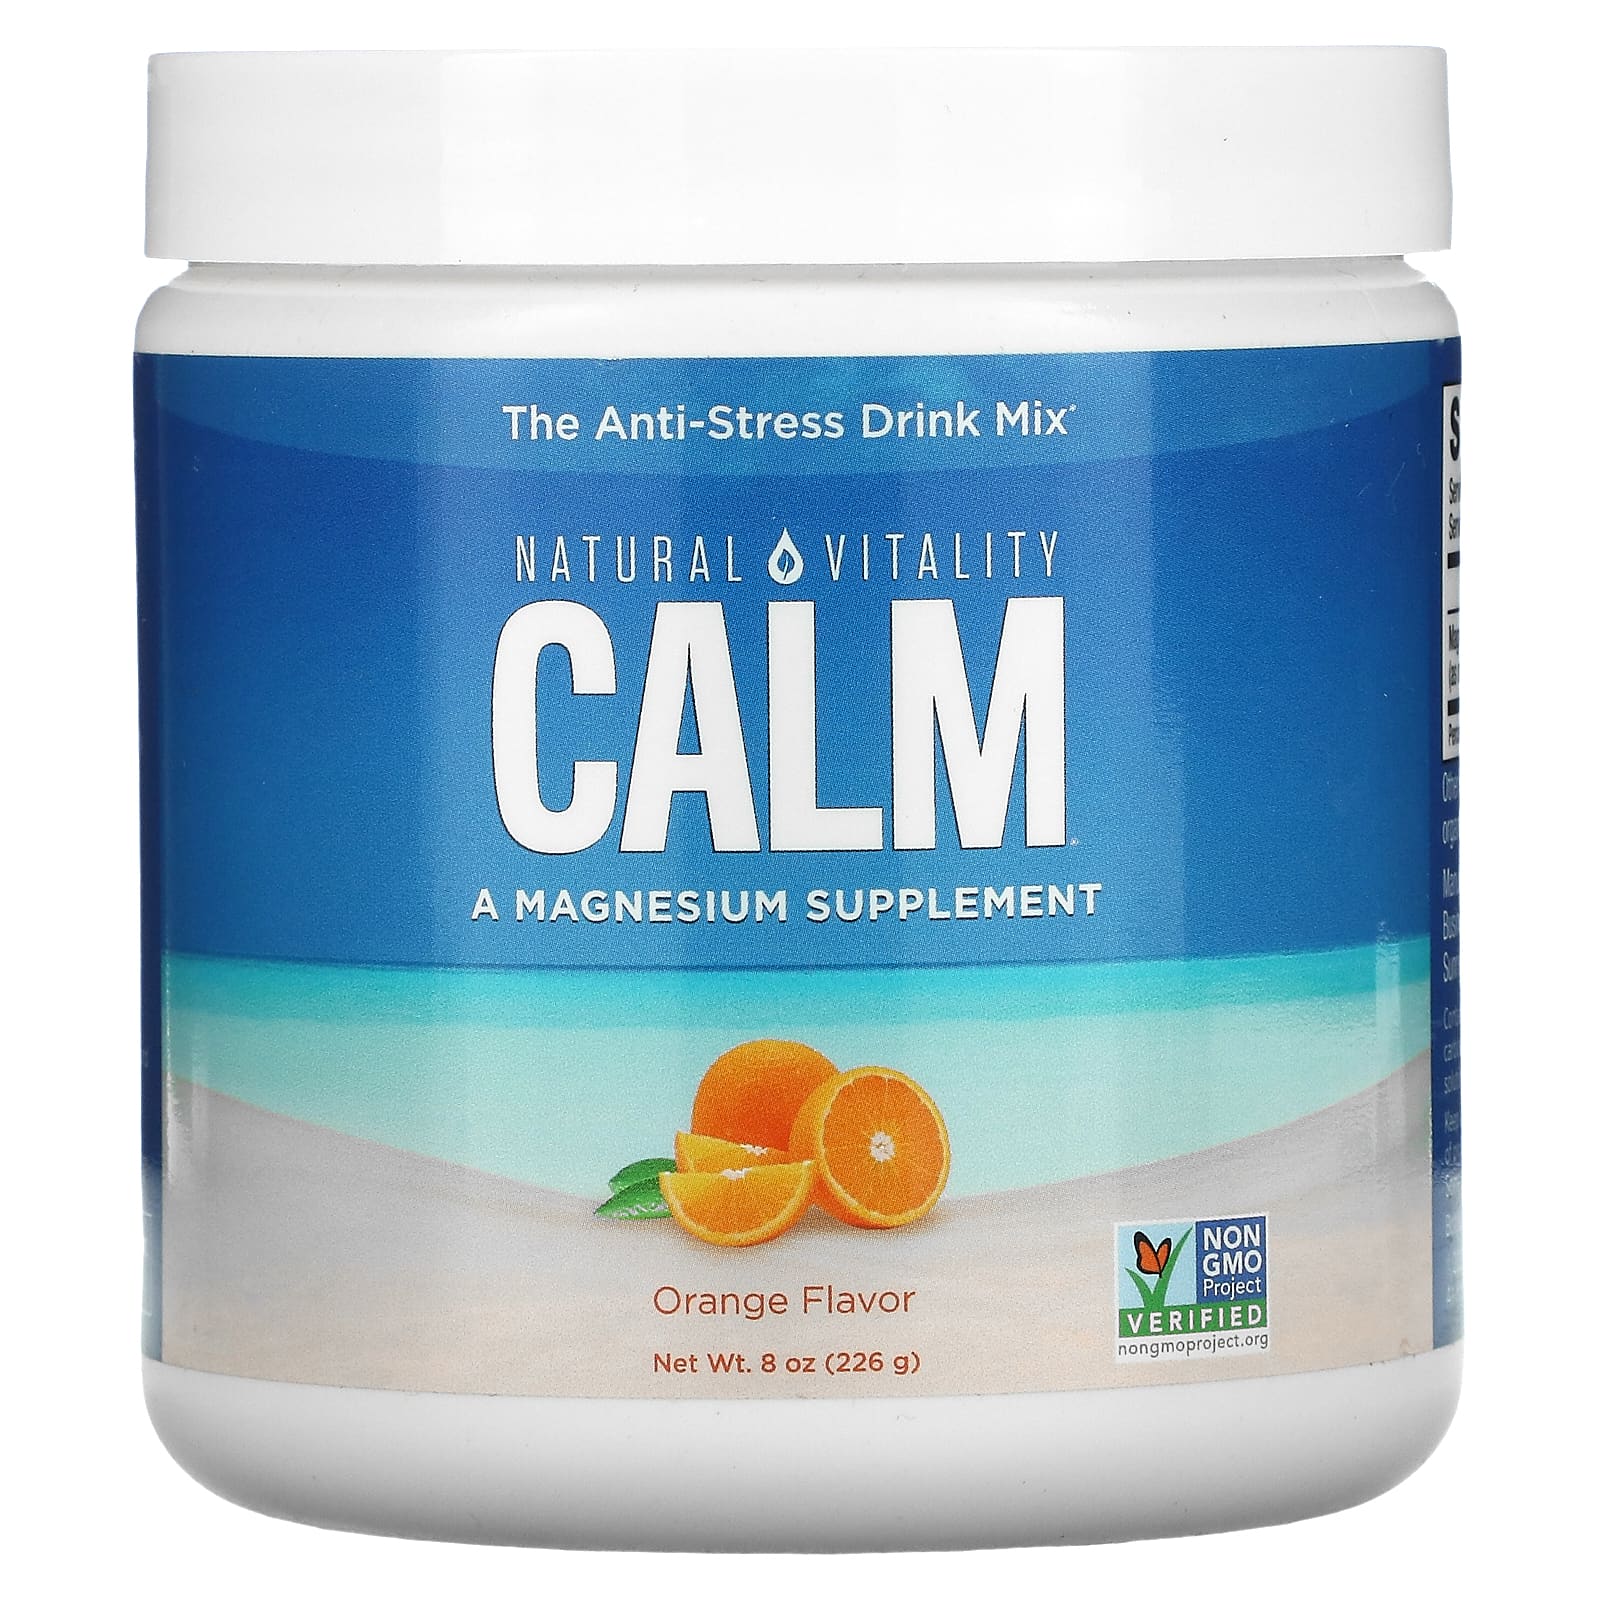 Natural Vitality CALM антистрессовая смесь для напитков апельсин 226 г (8 унций)